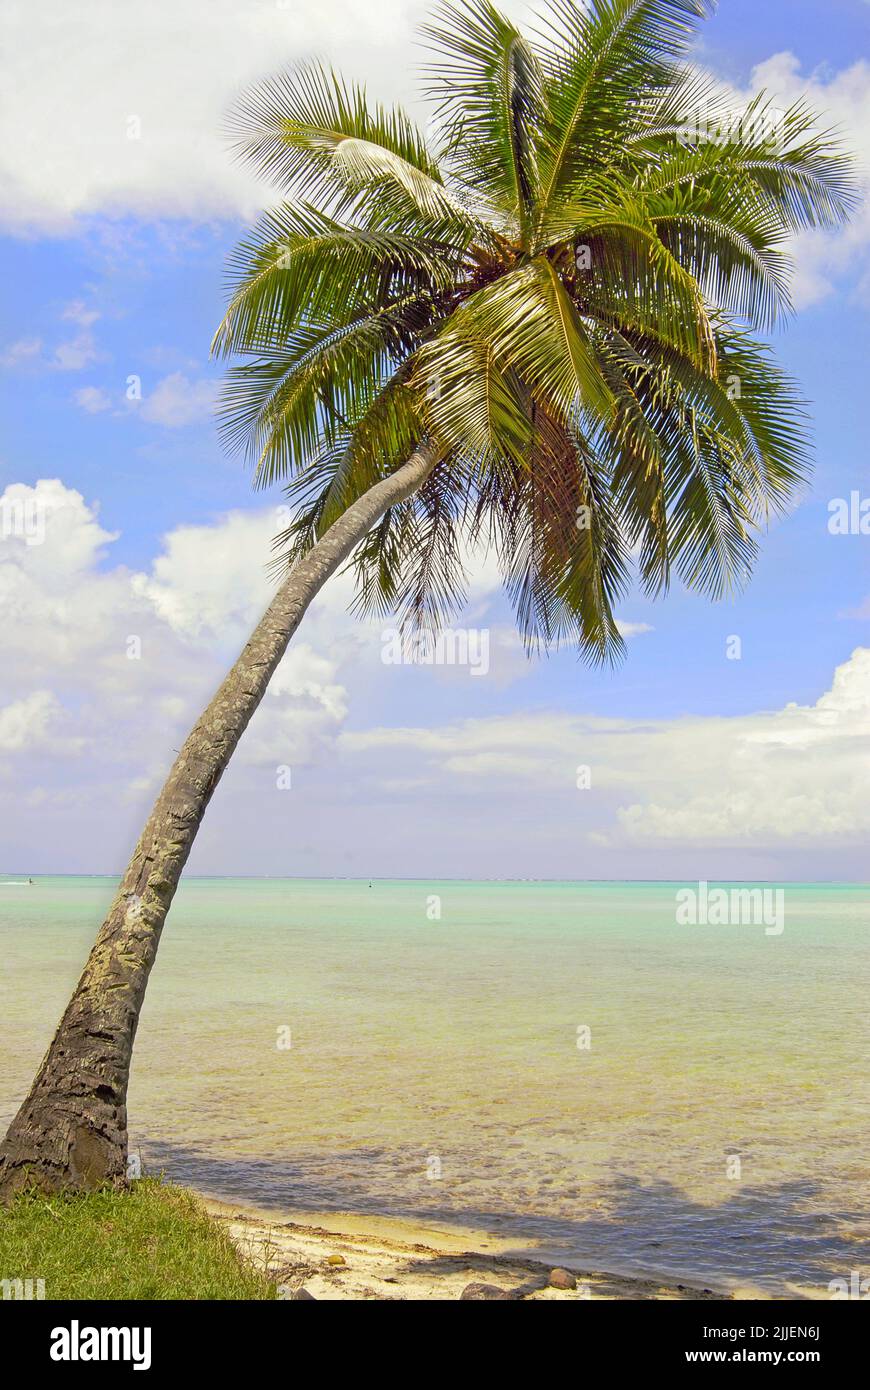 palm tree on the beach of Bora Bora, French Polynesia Stock Photo